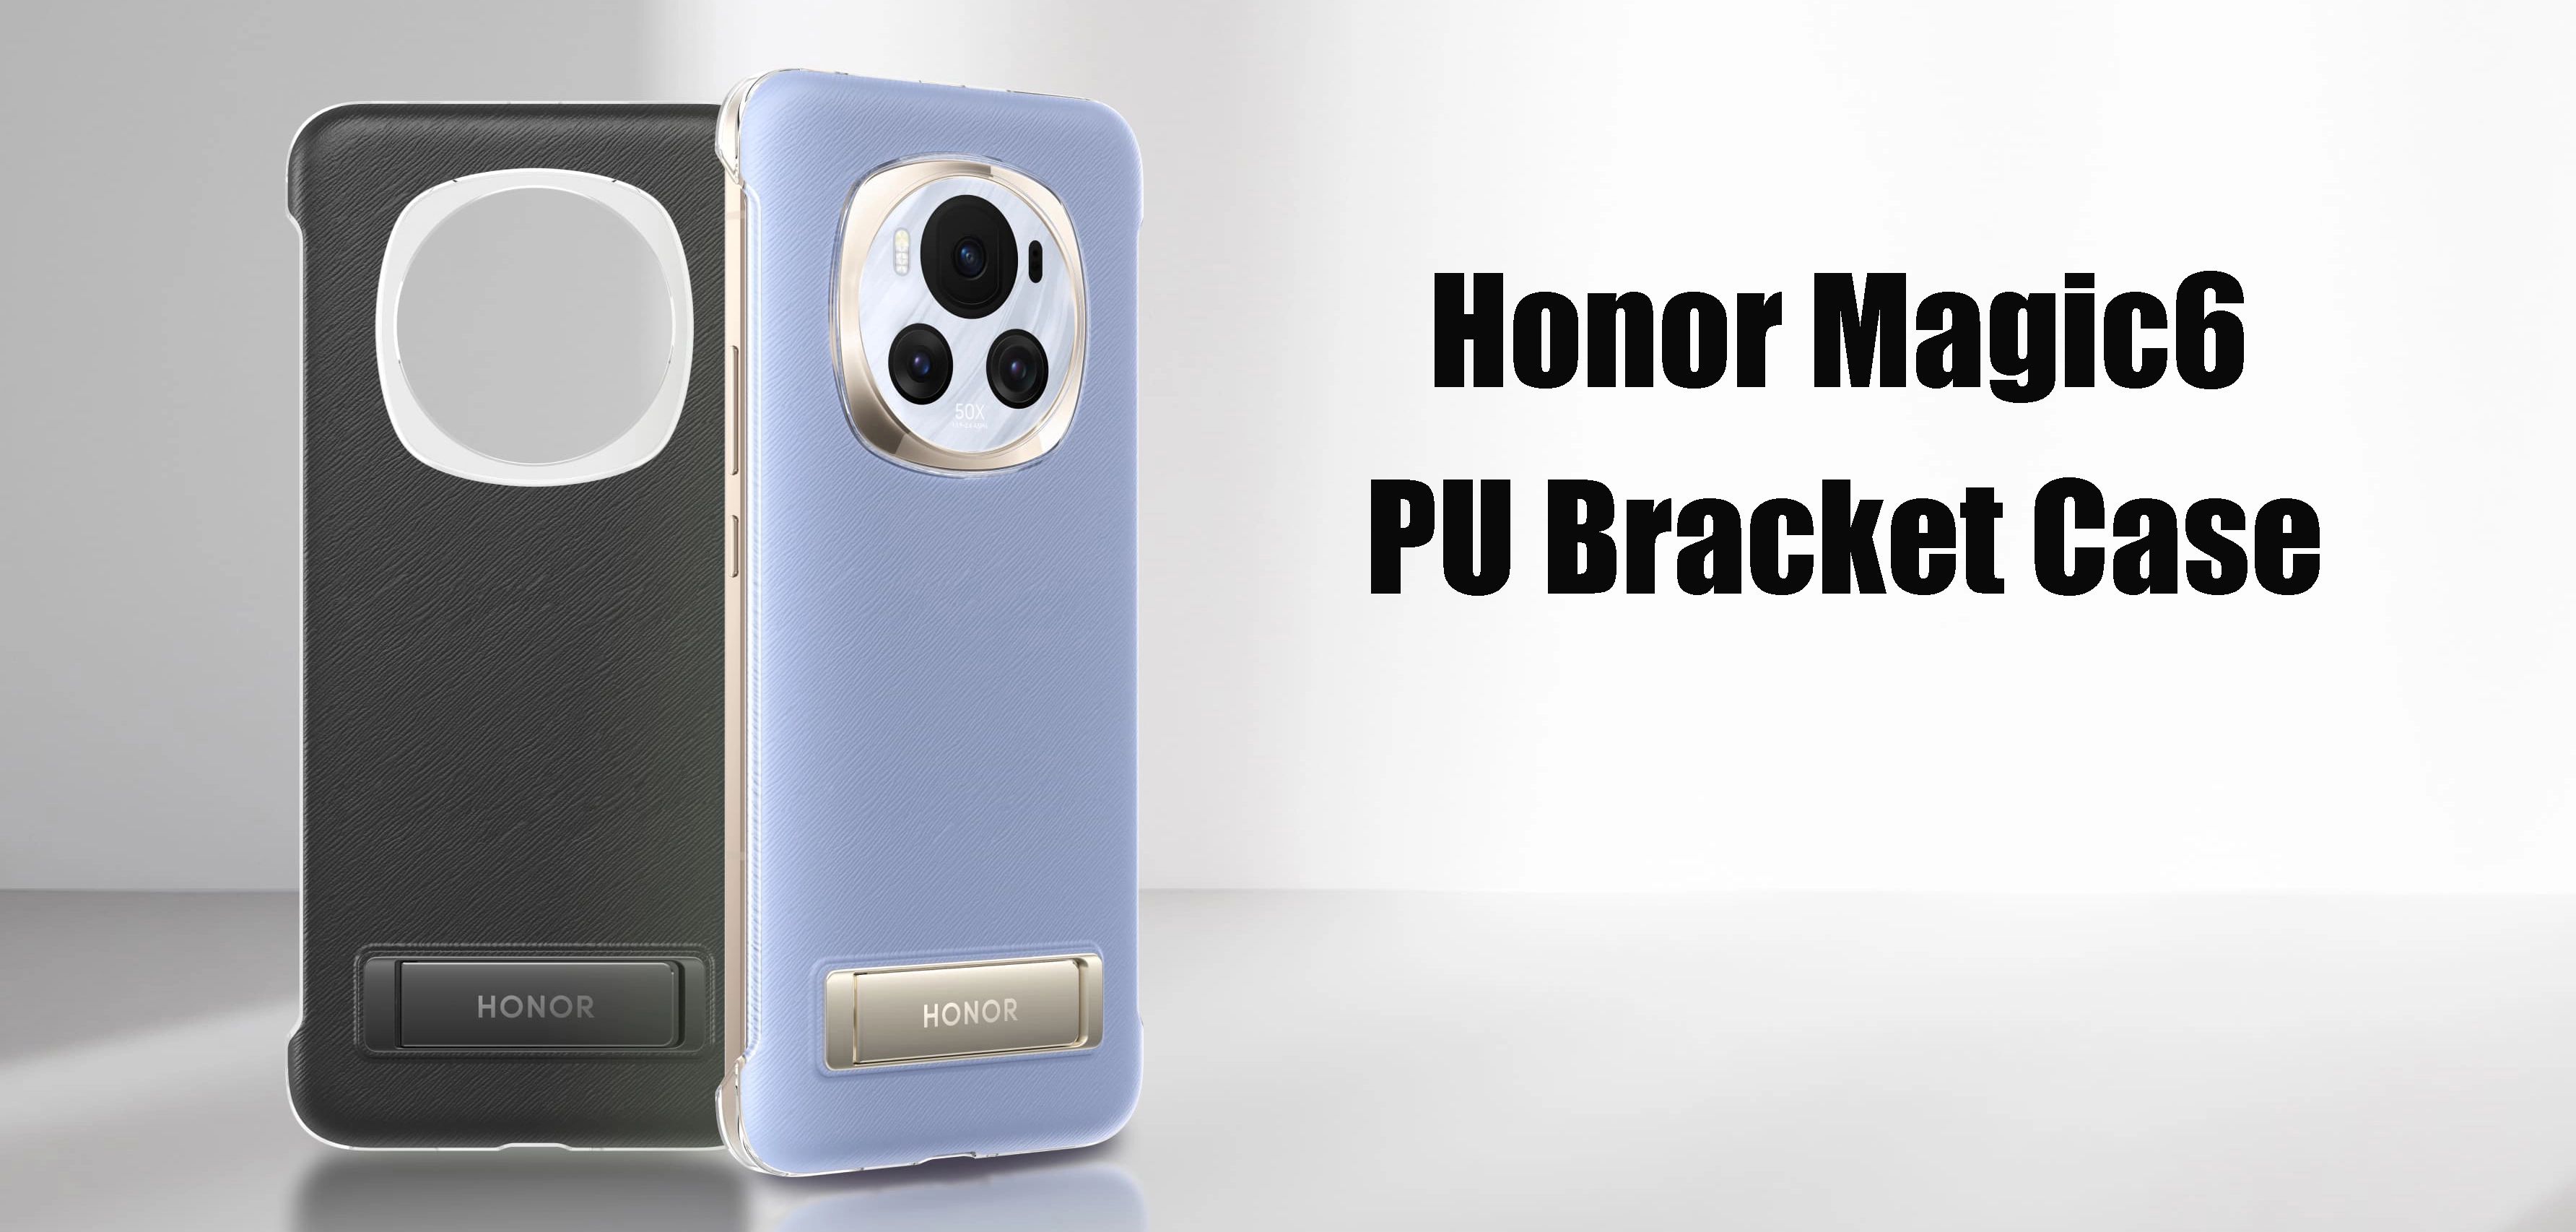 Honor Magic6 PU Bracket Case